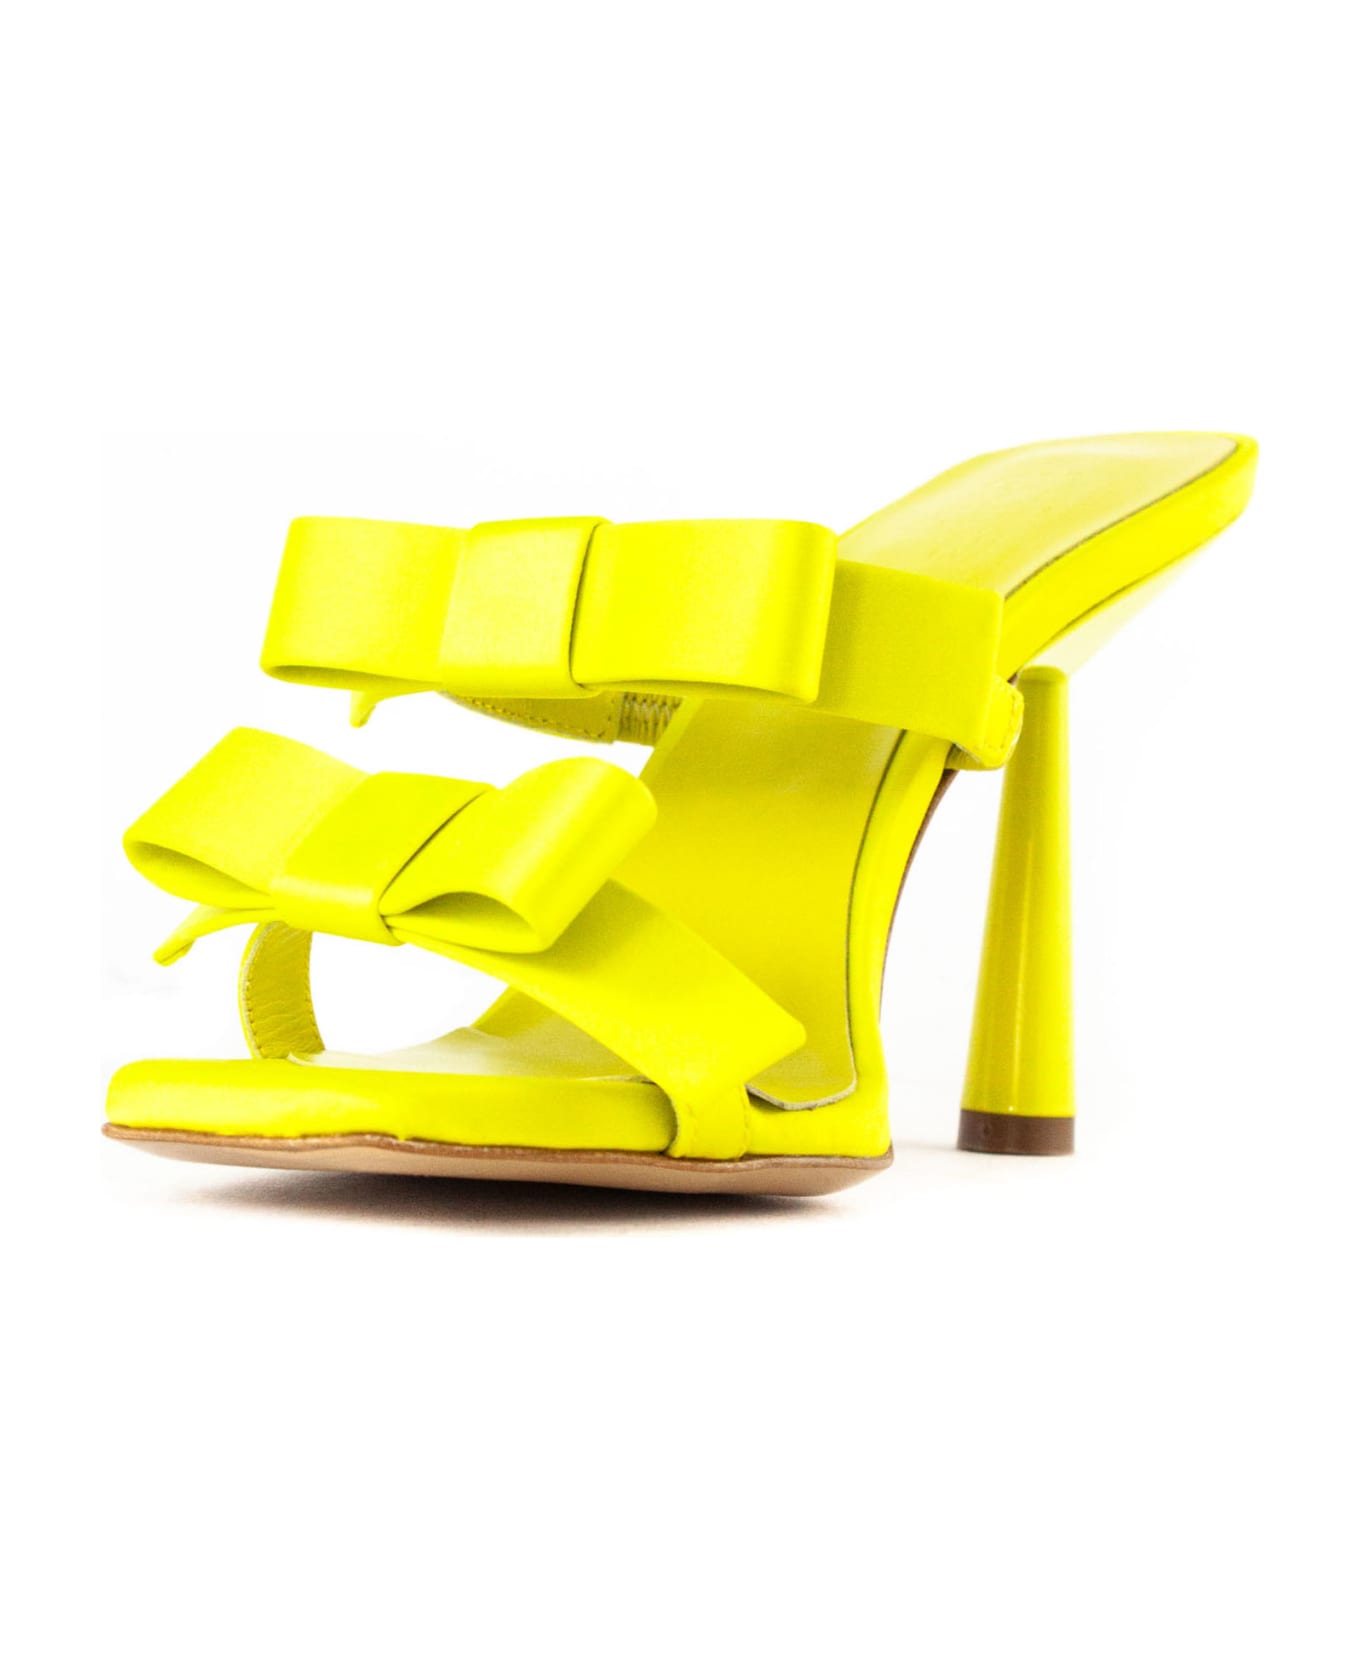 GIA BORGHINI Yellow Leather Sandal - Yellow サンダル